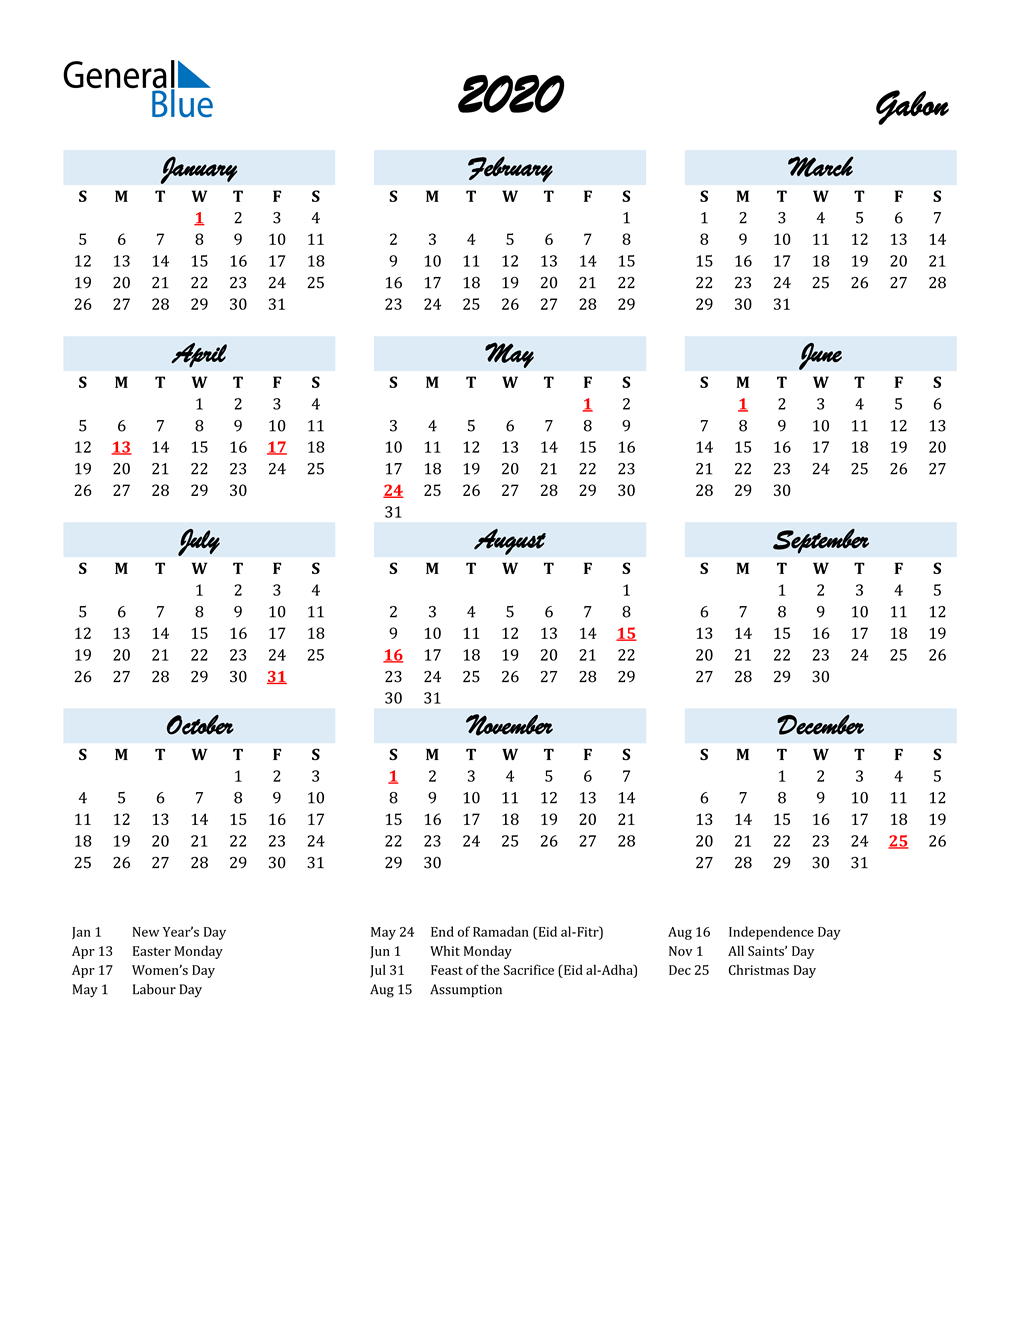 2020 Calendar for Gabon with Holidays